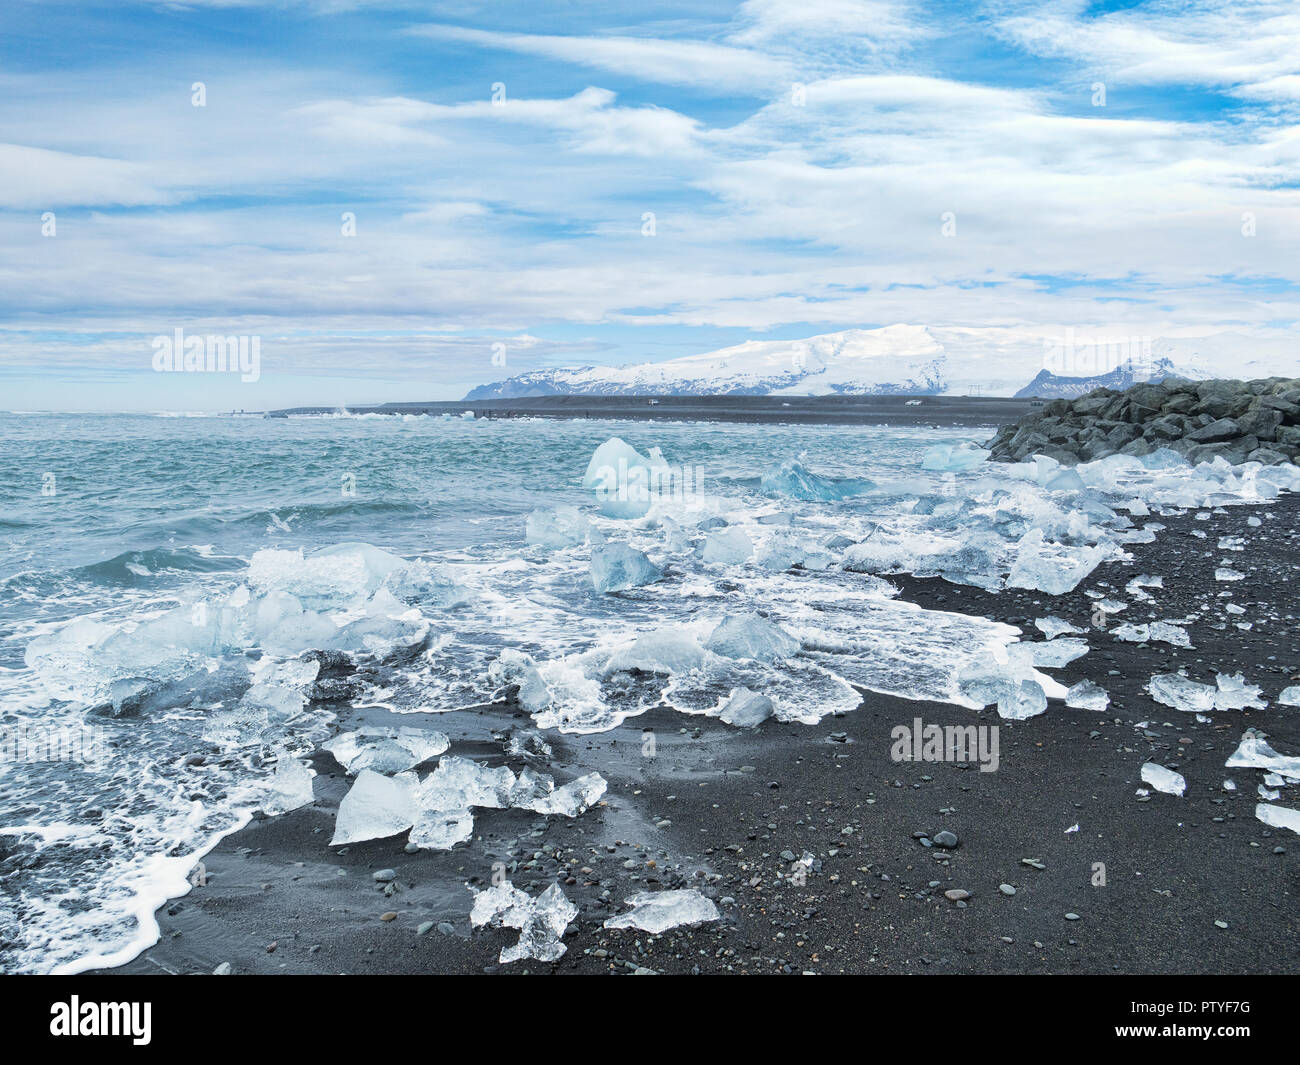 Plage du diamant, le sud de l'Islande, où la glace de Jokulsarlon Glacial Lagoon est déposé sur le sable noir volcanique. Banque D'Images